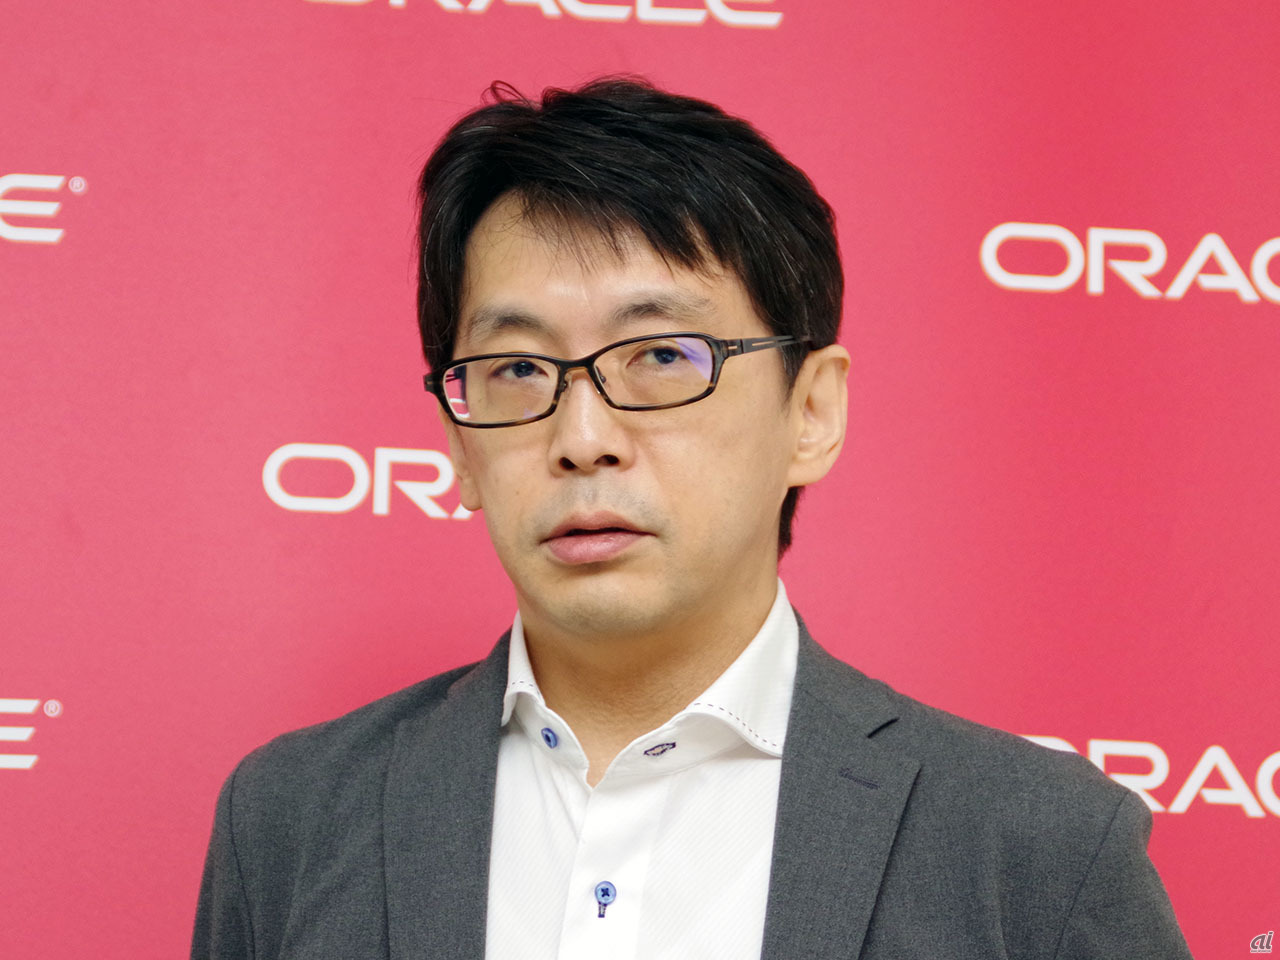 日本オラクル クラウドプラットフォーム戦略統括 ビジネス推進本部 本部長 佐藤裕之氏